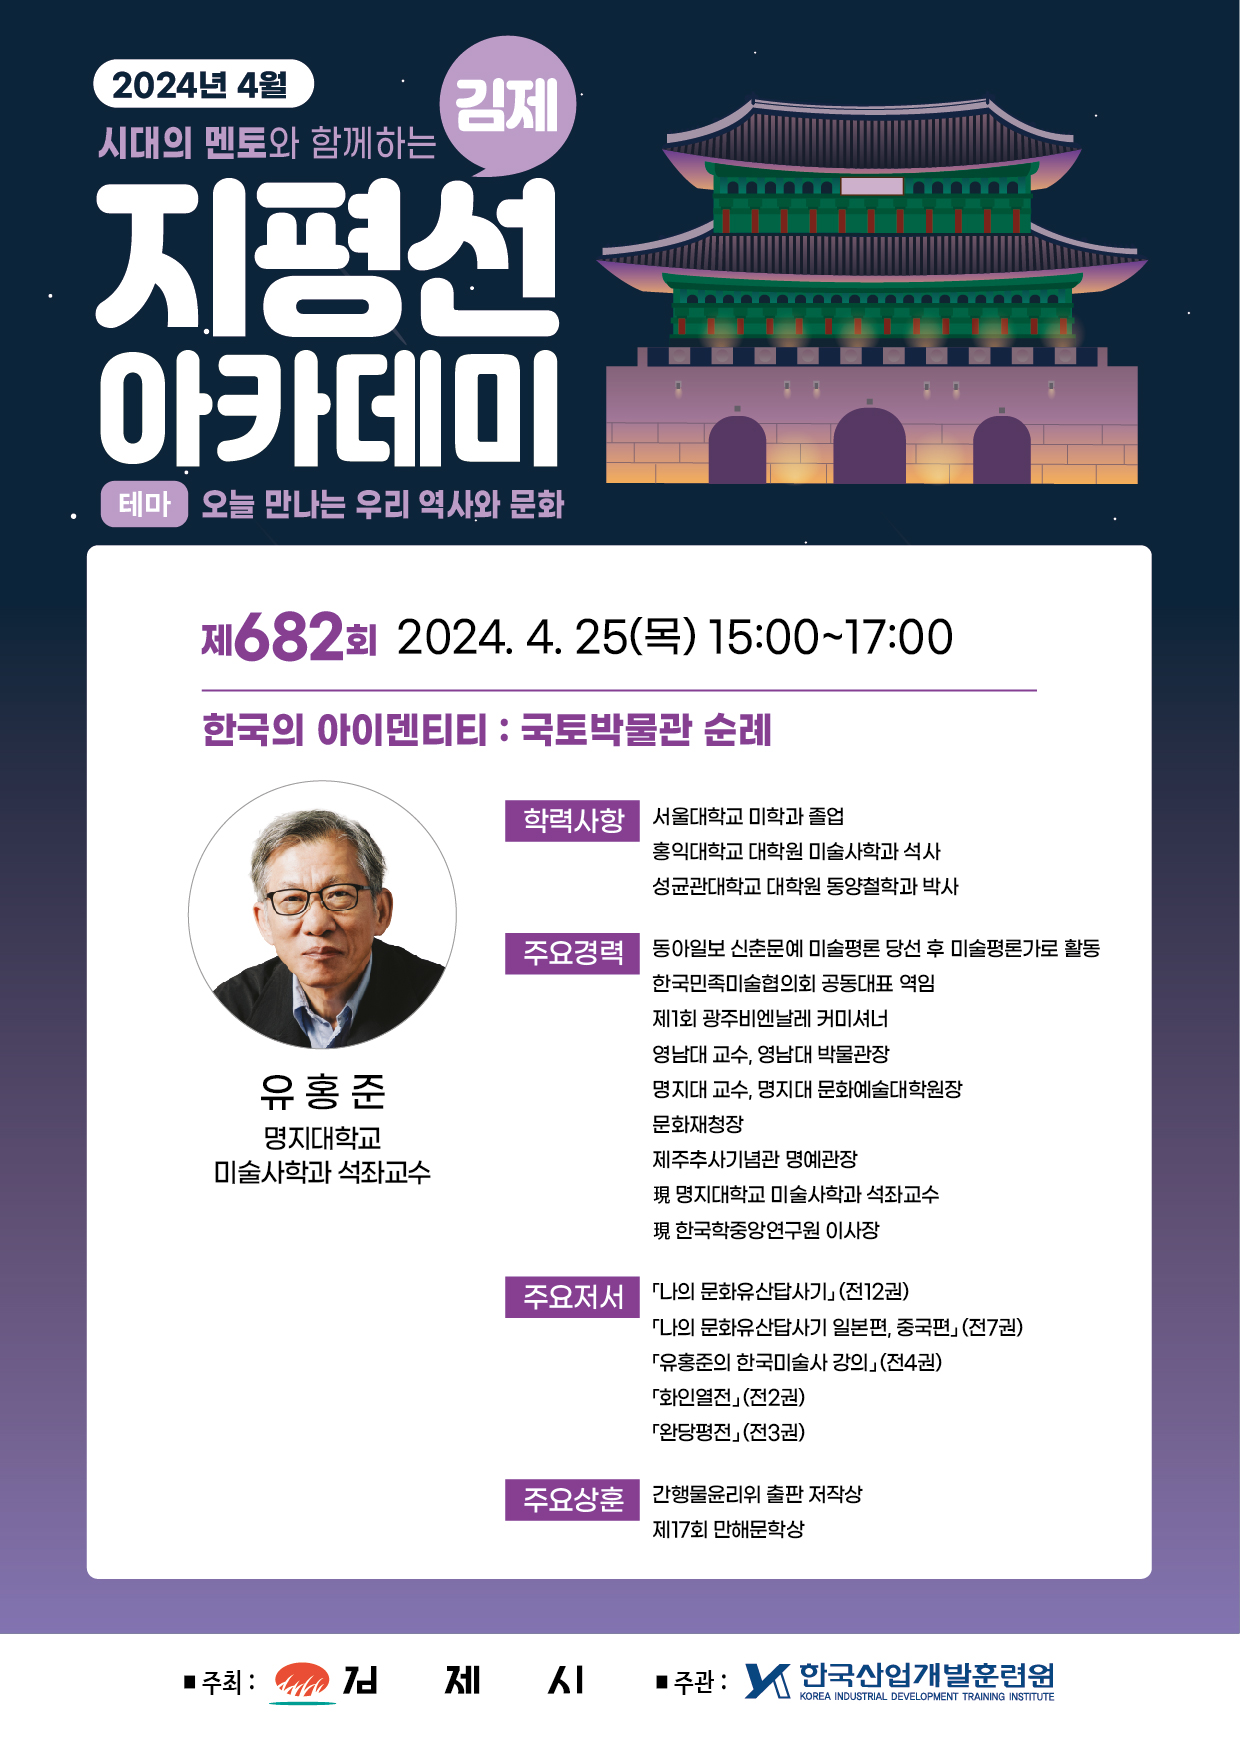 제682회 김제지평선아카데미 강연안내